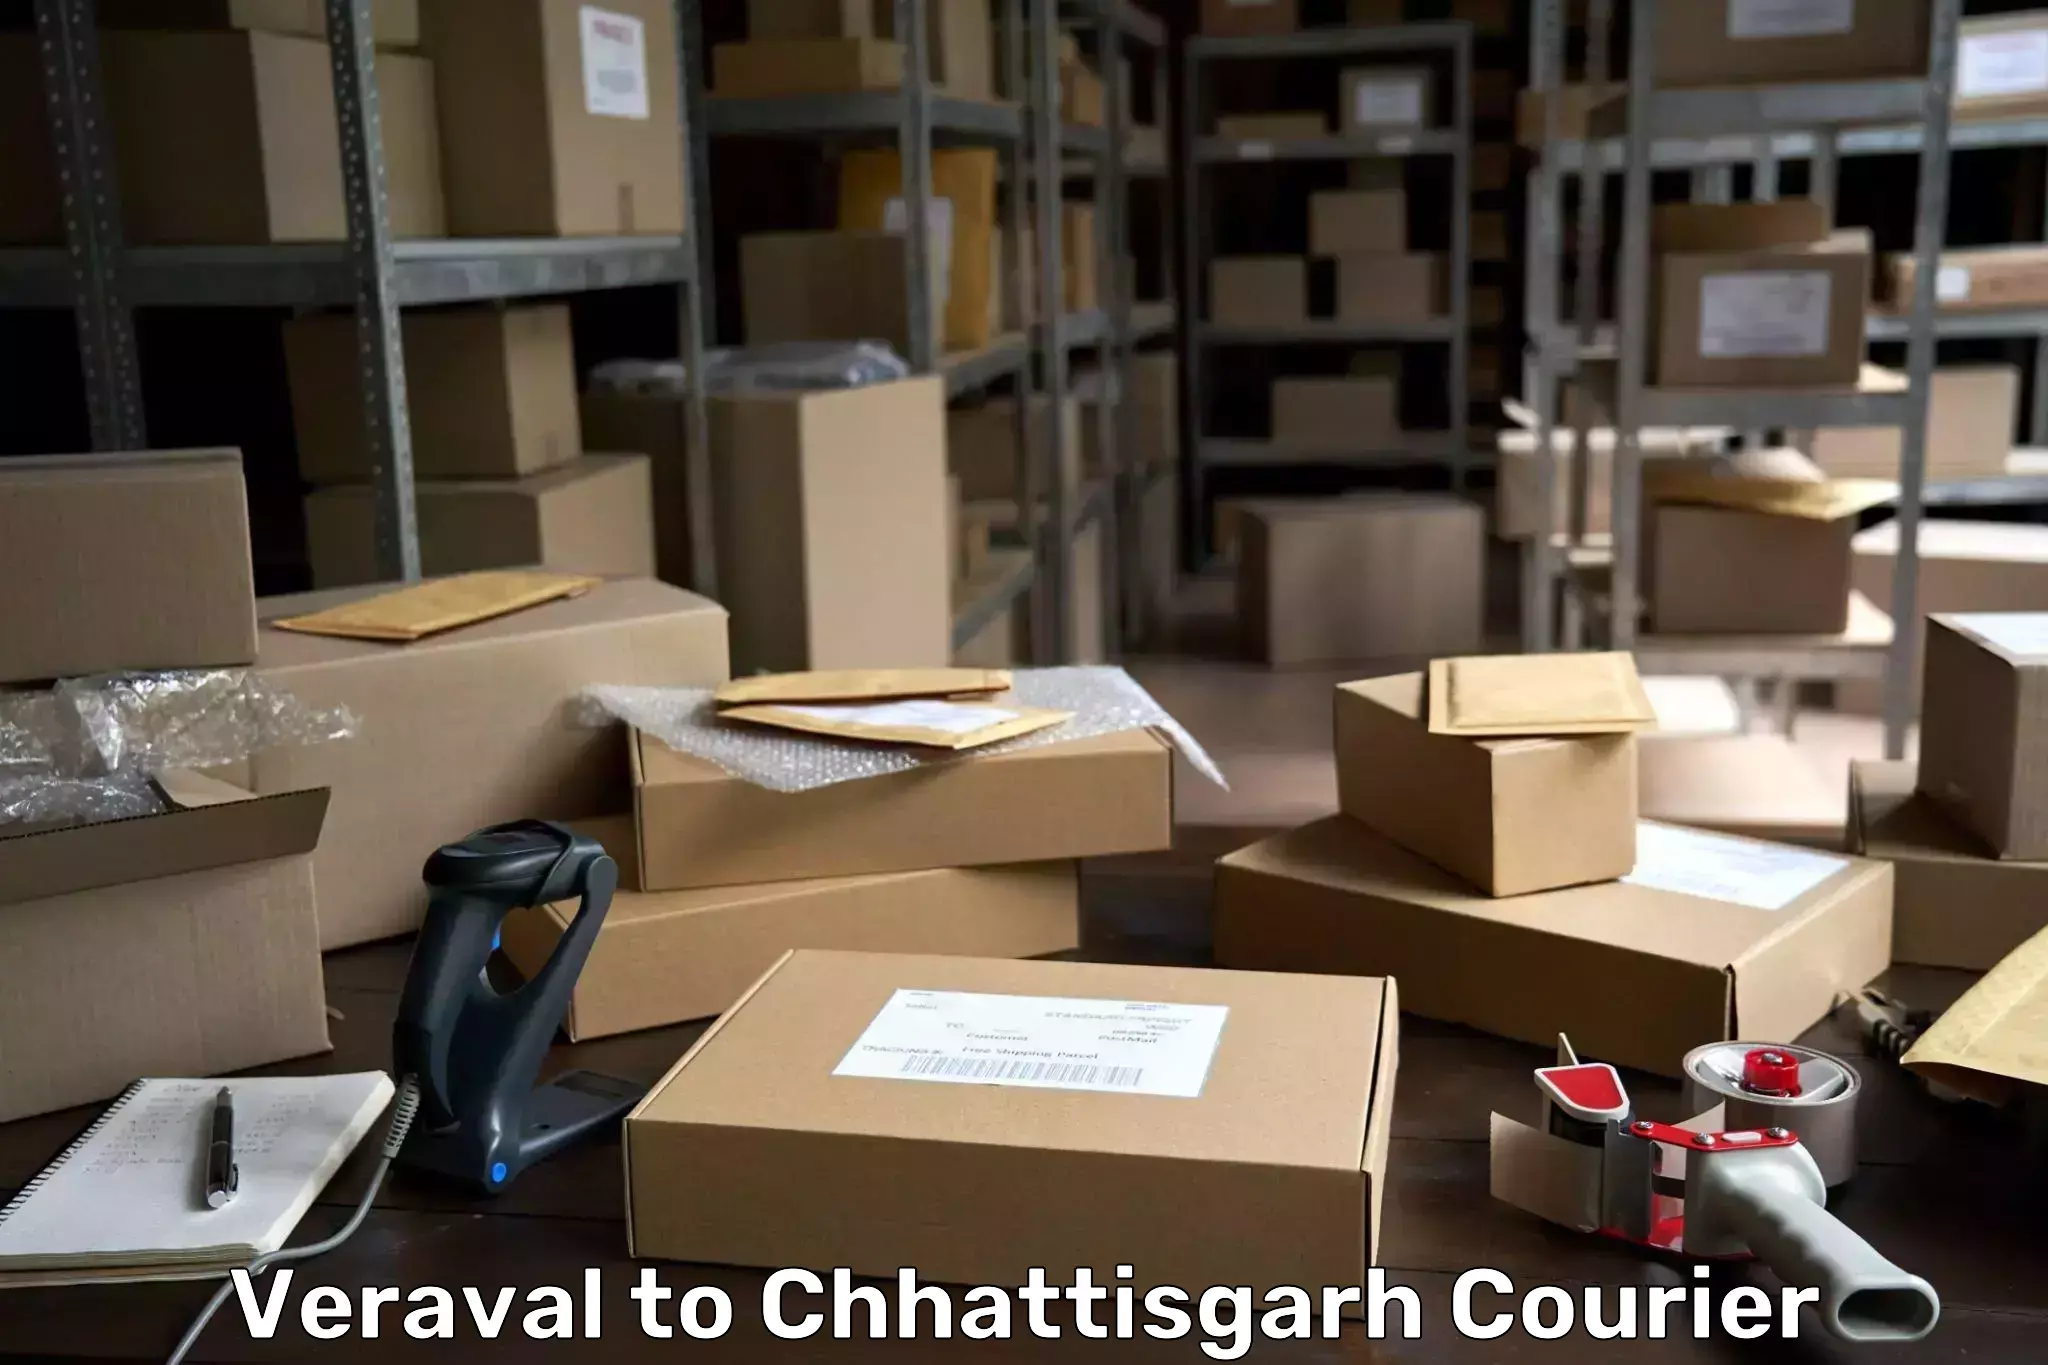 Cash on delivery service Veraval to Raigarh Chhattisgarh